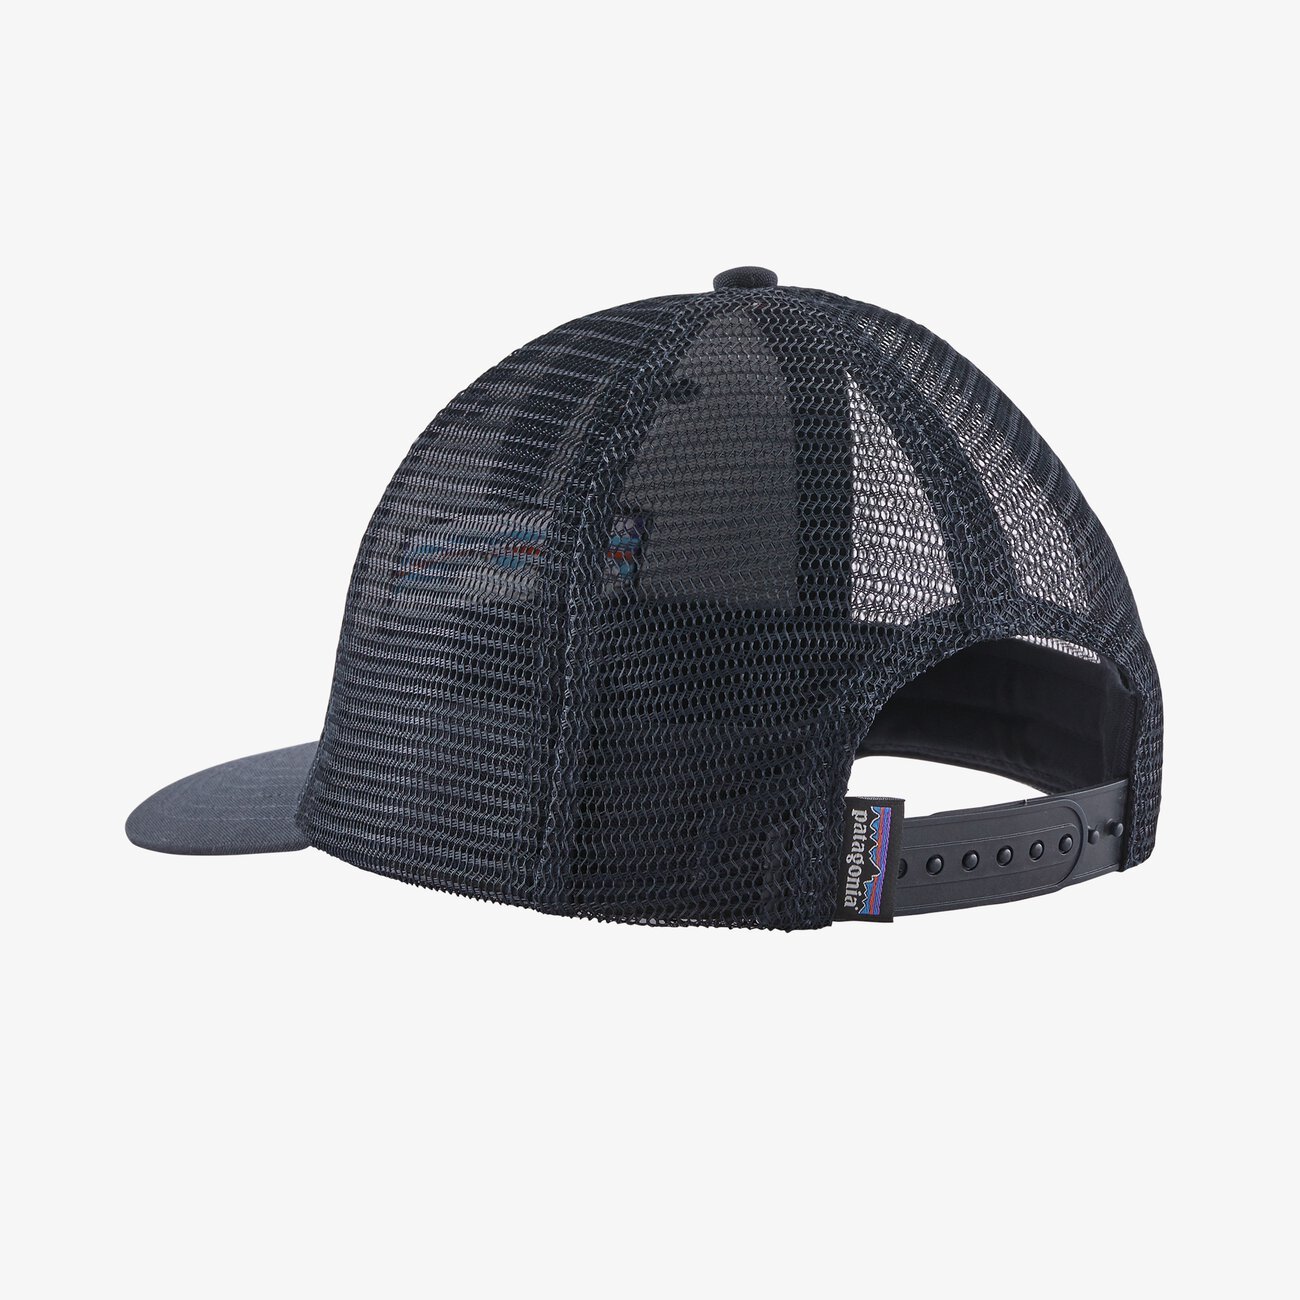 PATAGONIA Men's Hats BLACK Patagonia P-6 Logo LoPro Trucker Hat || David's Clothing 38283BLK